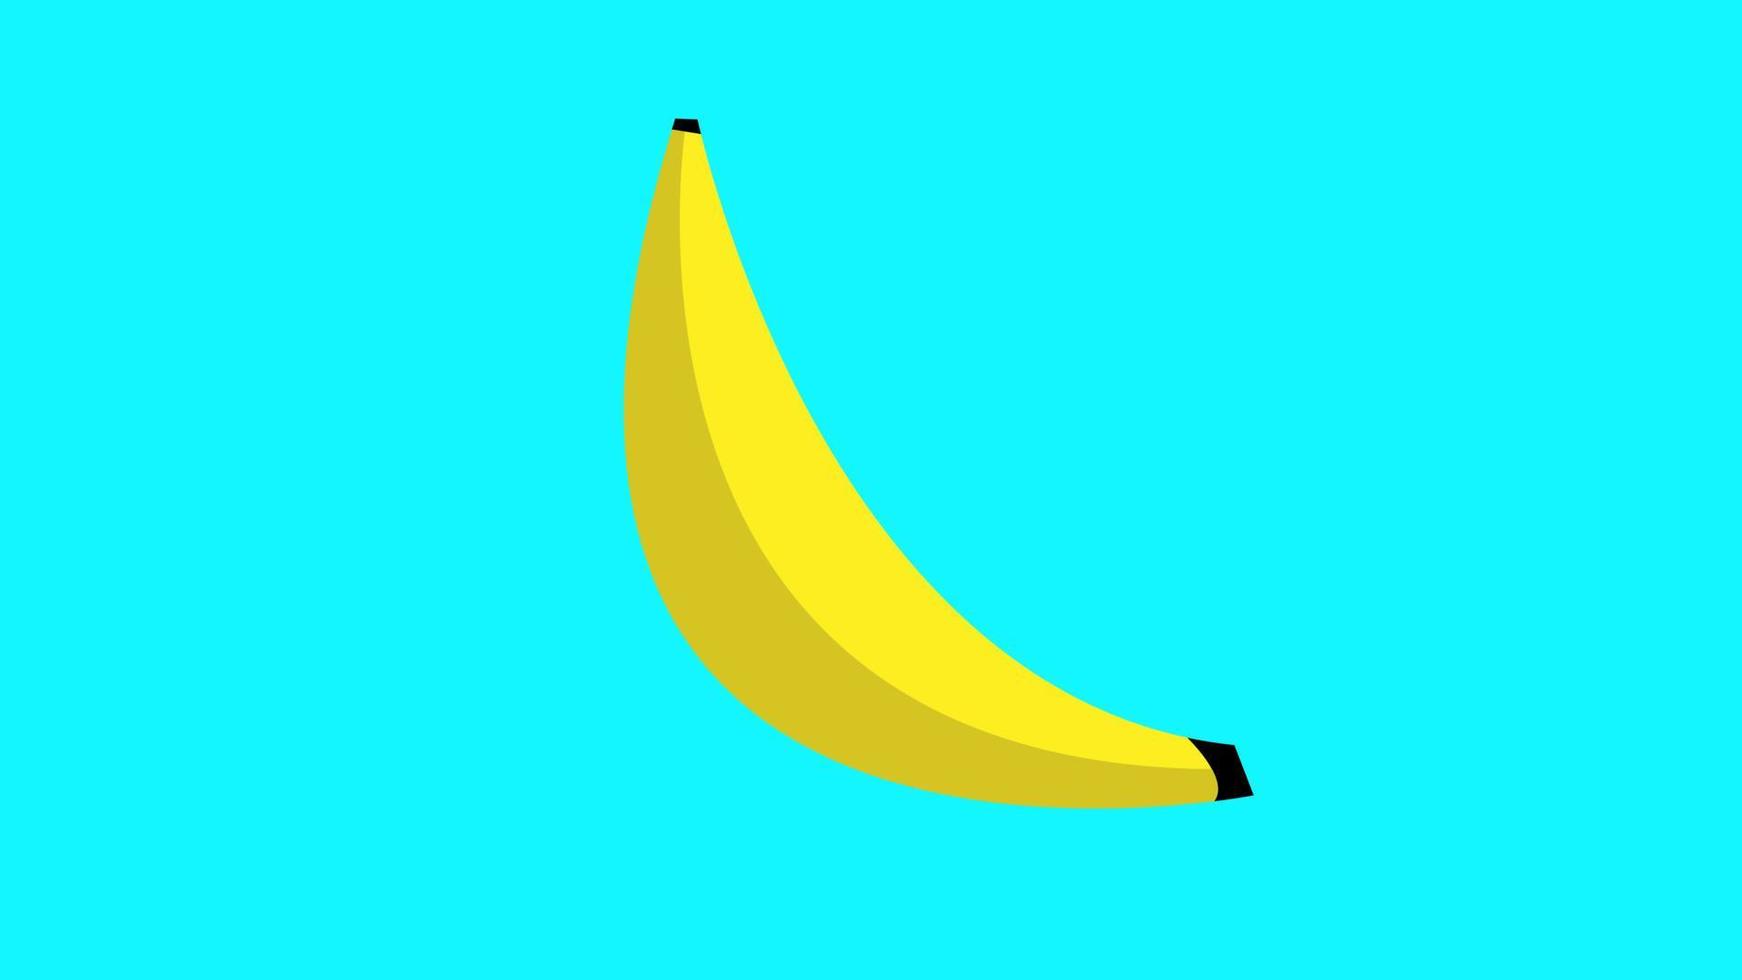 Vektor-Illustration. Gelbe, helle, trendige und stilvolle Banane auf türkisfarbenem Hintergrund. süße bananenillustration in stilvoller farbe vektor